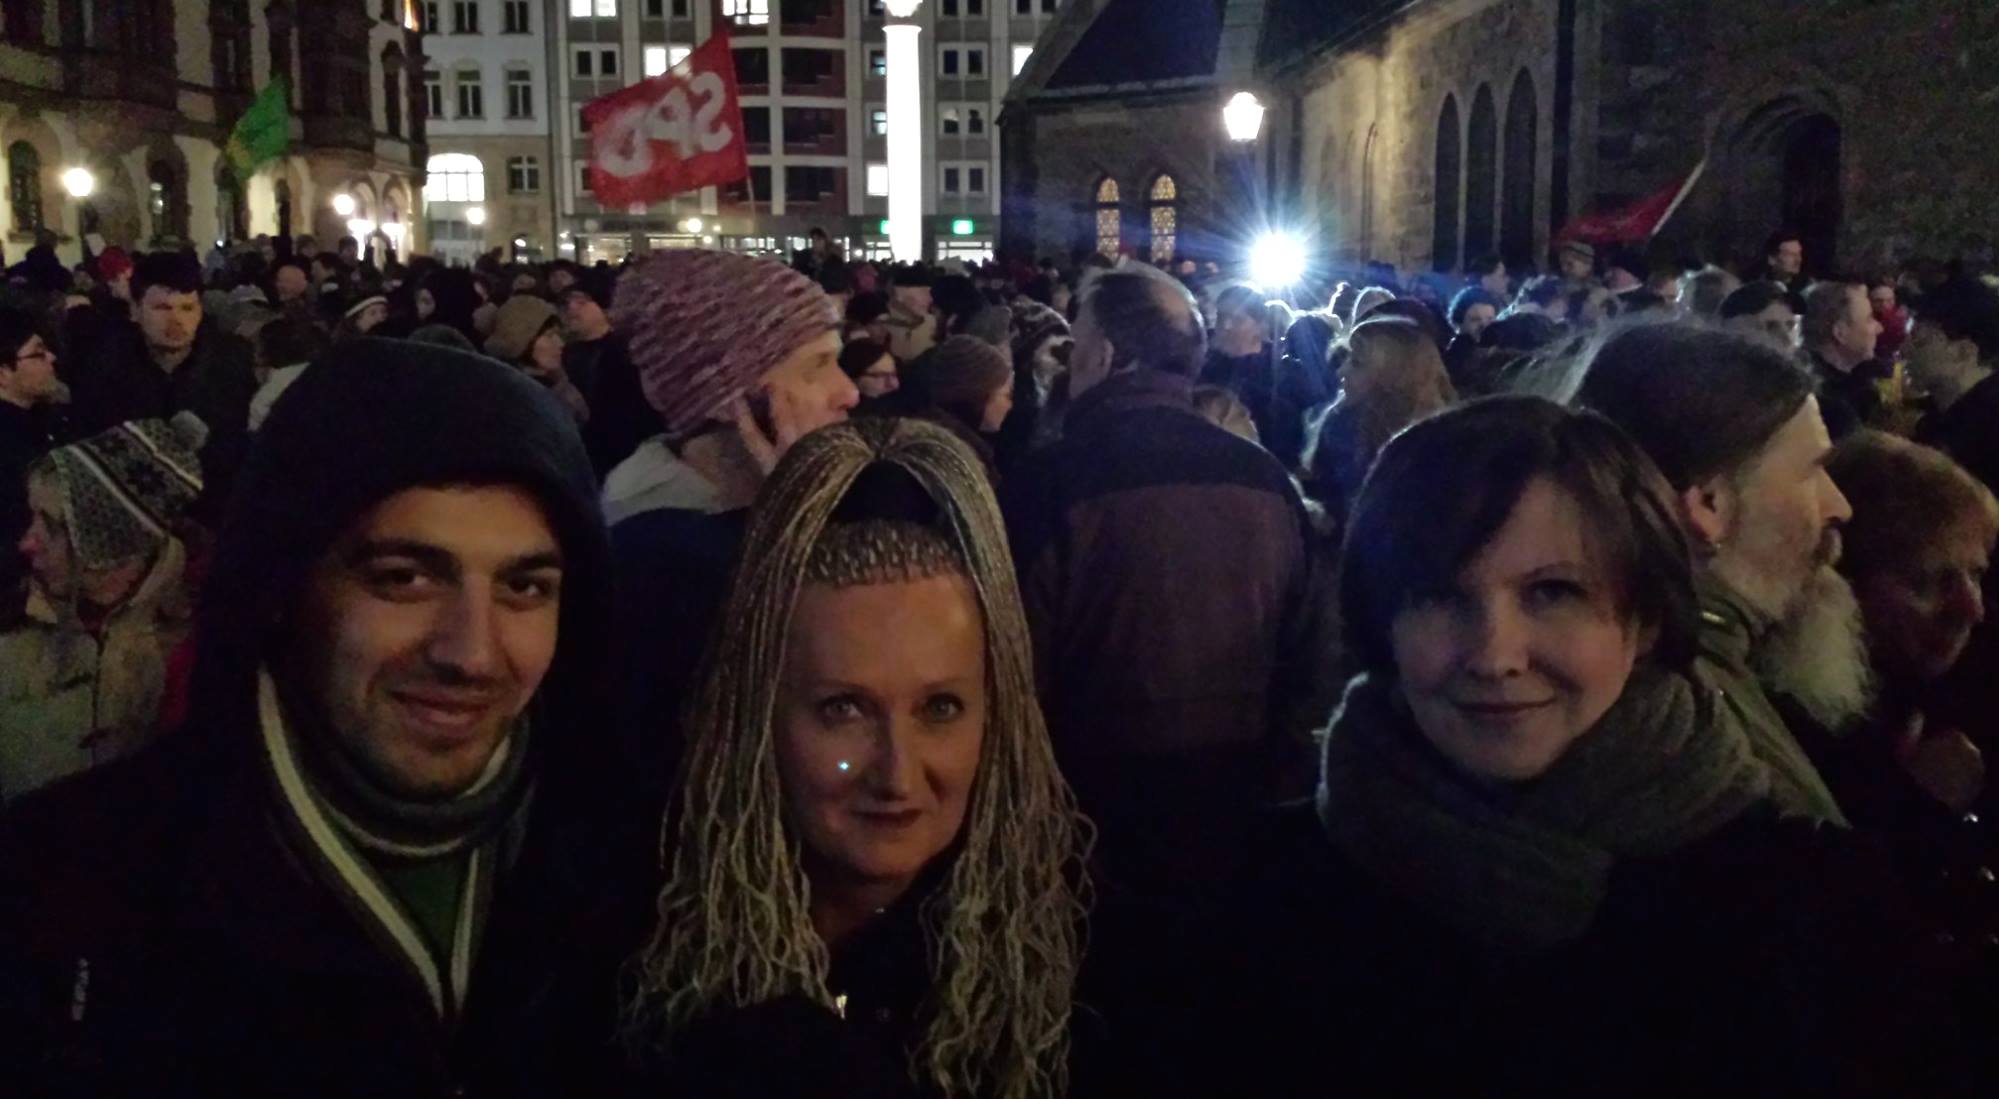 Foto: Irena Rudolph-Kokot demonstriert mit Anhängern gegen Legida